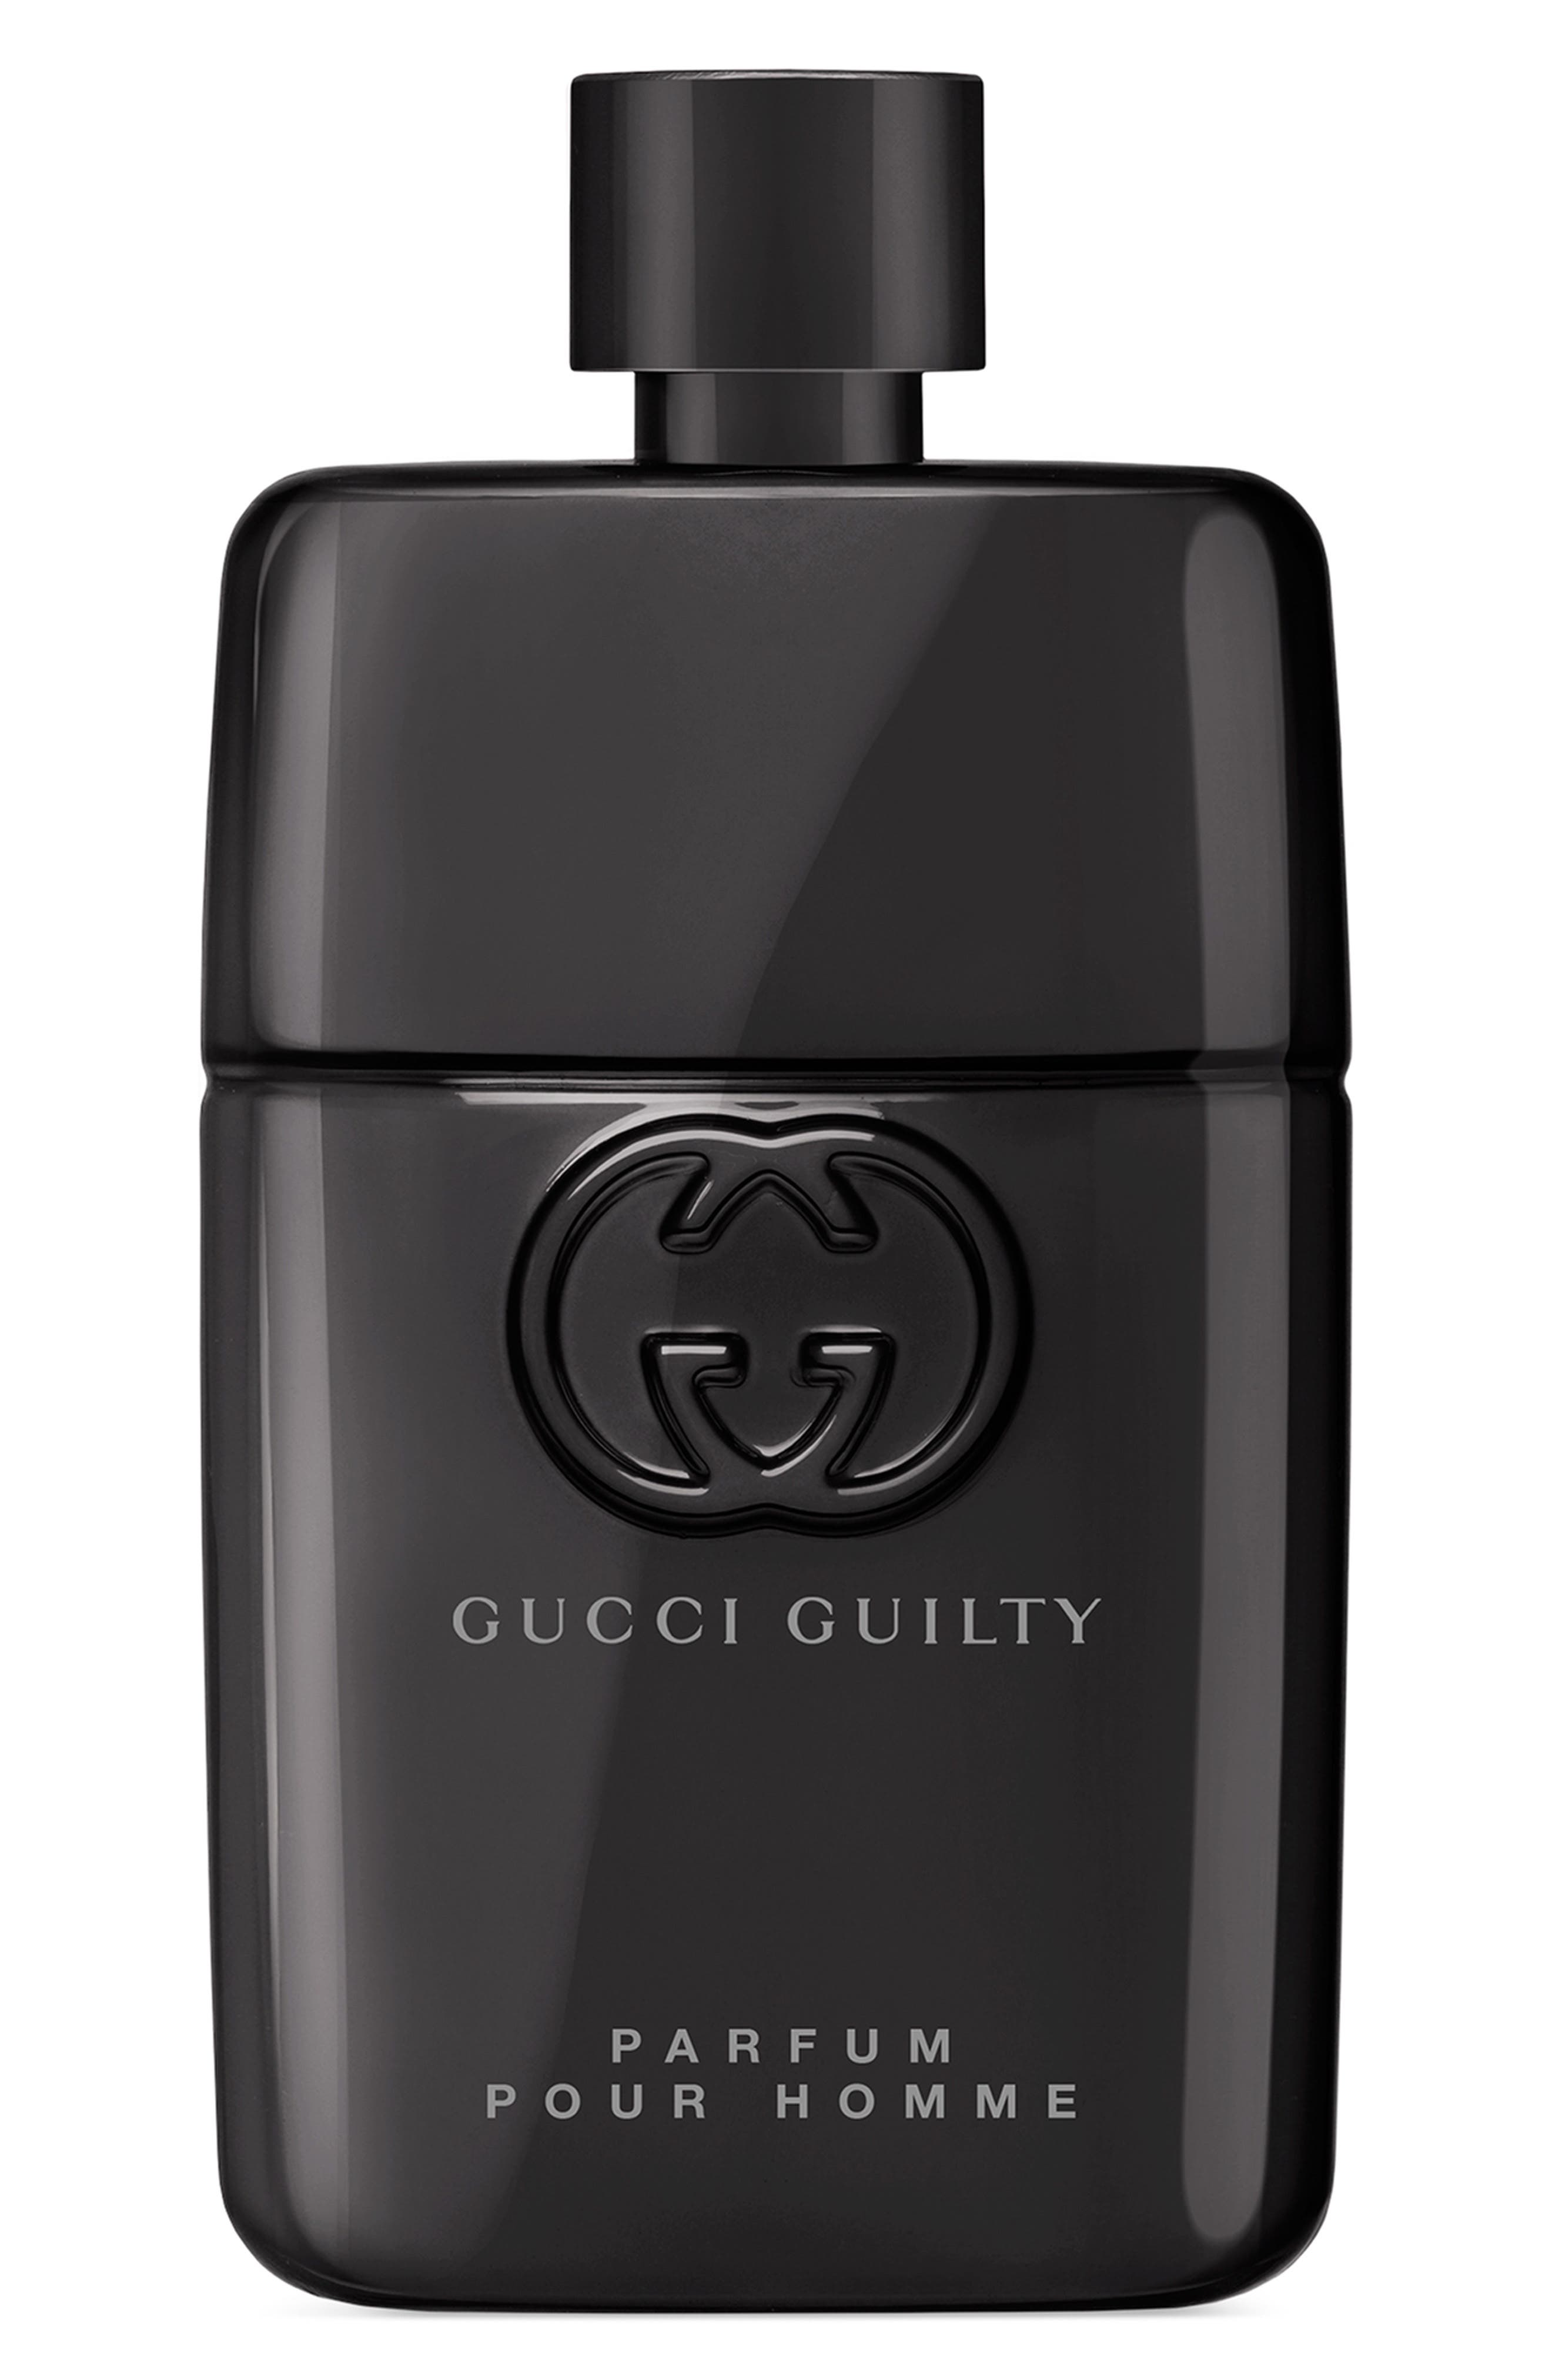 Gucci Guilty Parfum Pour Homme at Nordstrom, Size 1.7 Oz